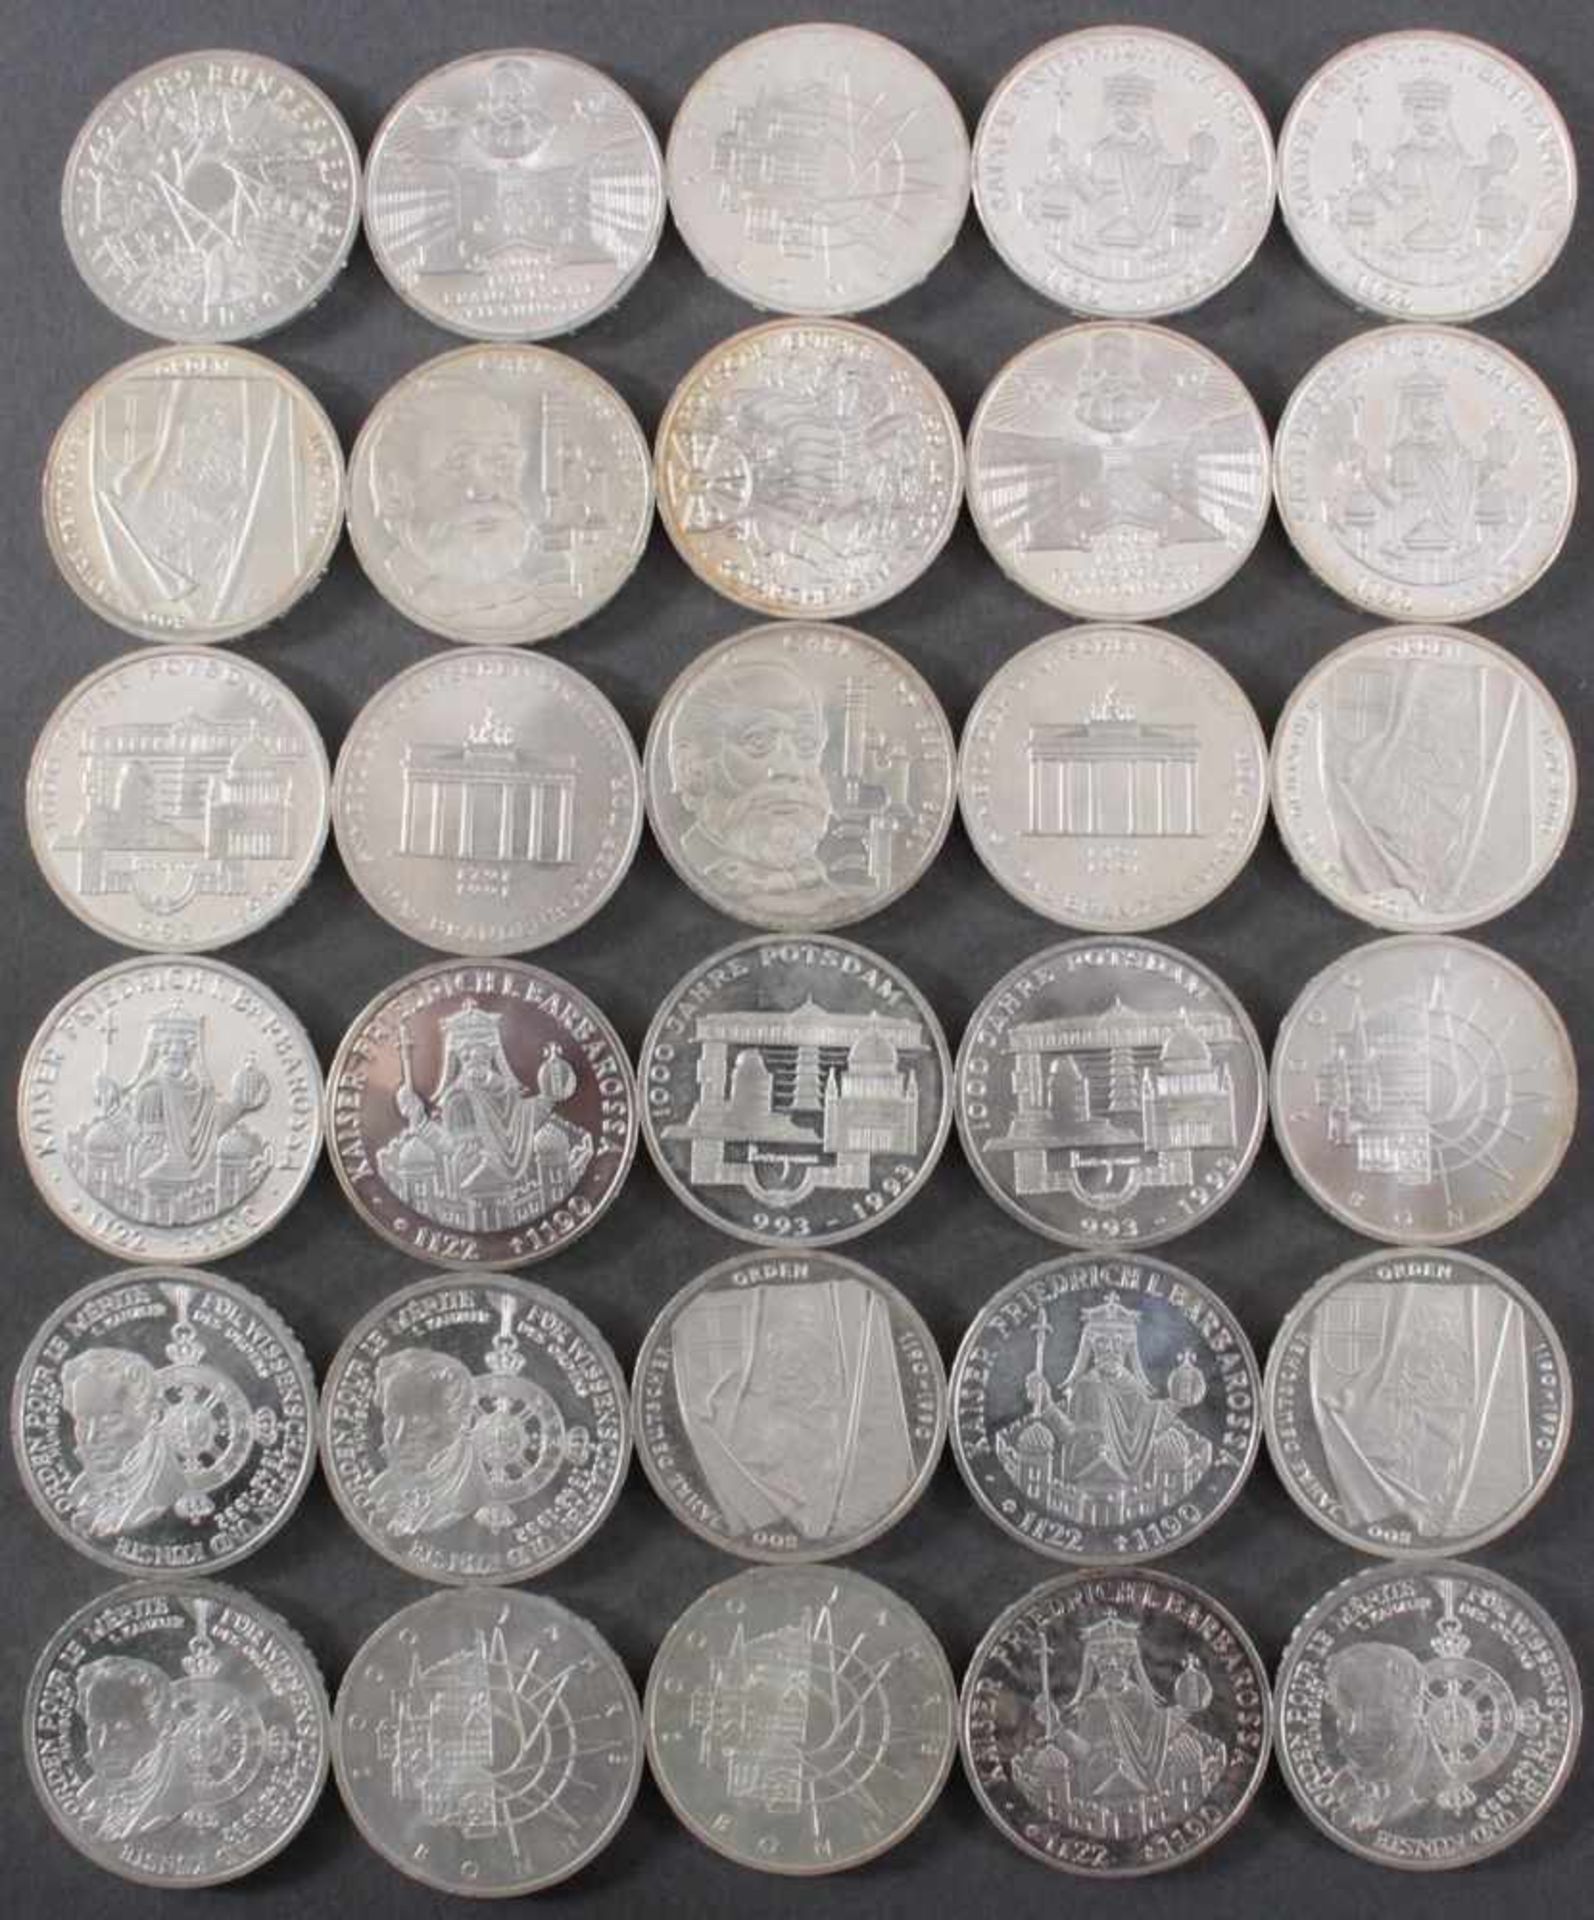 BRD, 10 DM Gedenkmünzen, 30 StückIn unterschiedlicher Erhaltung